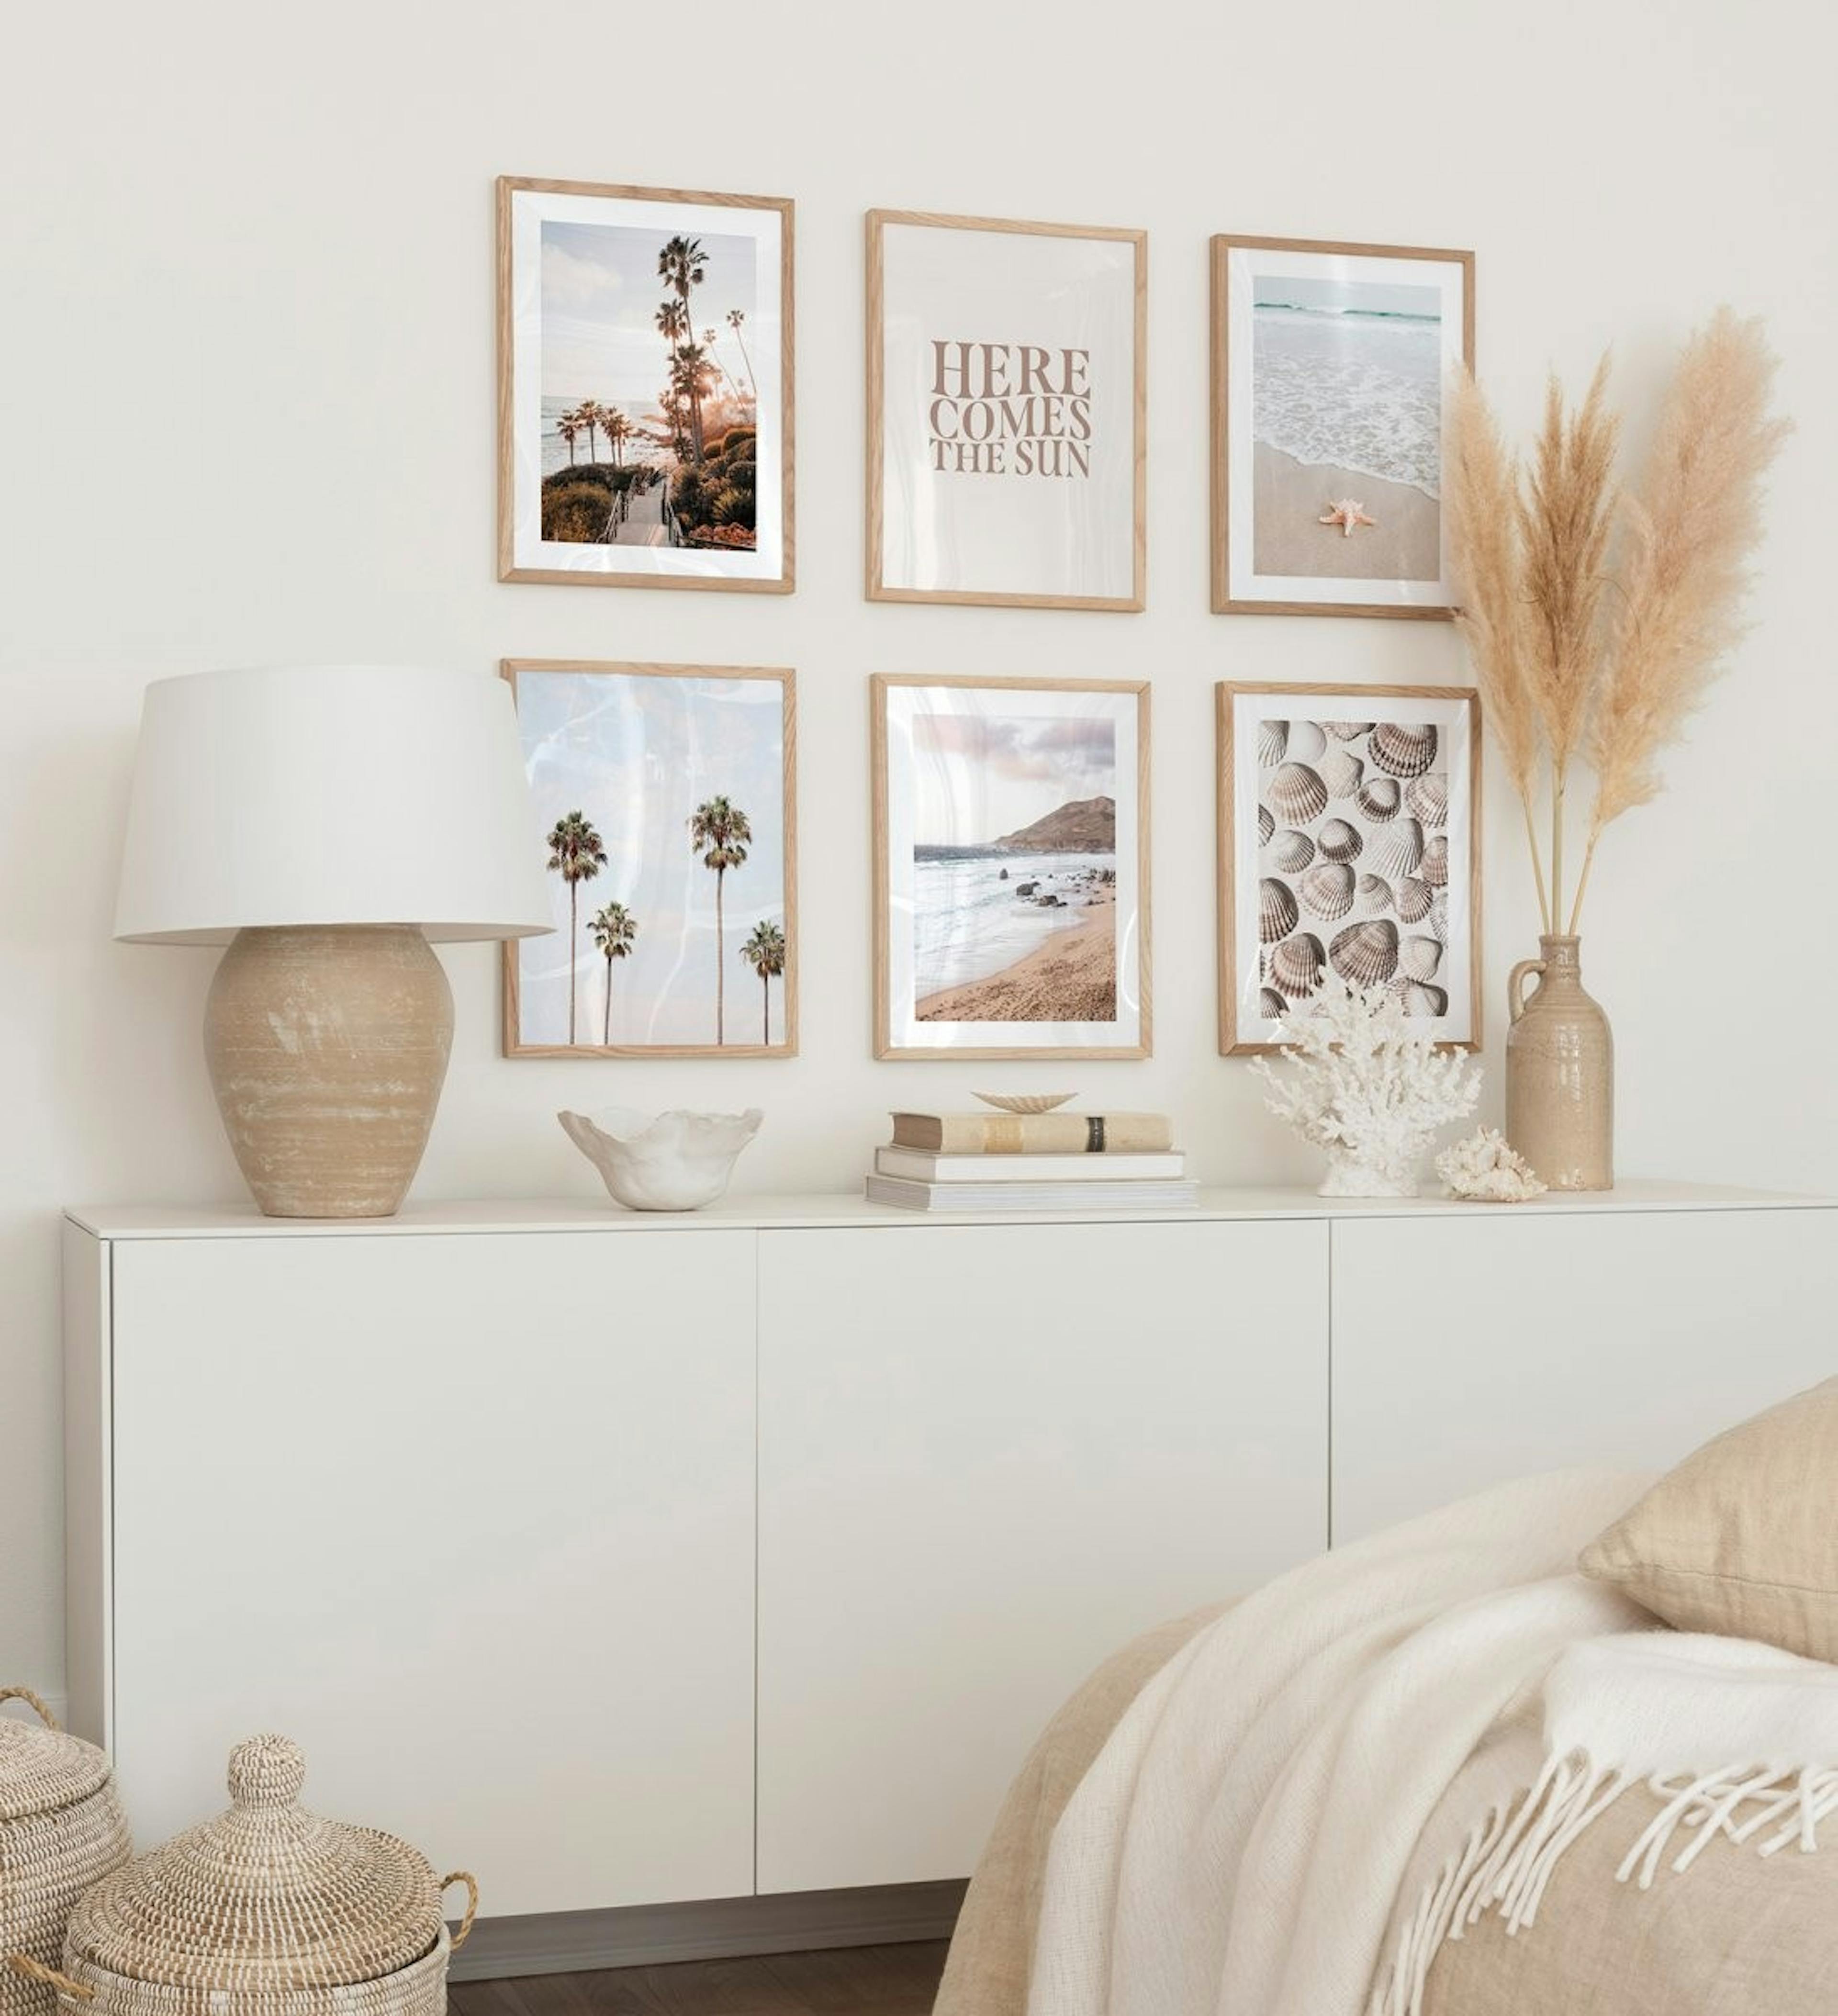 Fotowand voor slaapkamer met tropische strandposters in eikenhouten lijsten.